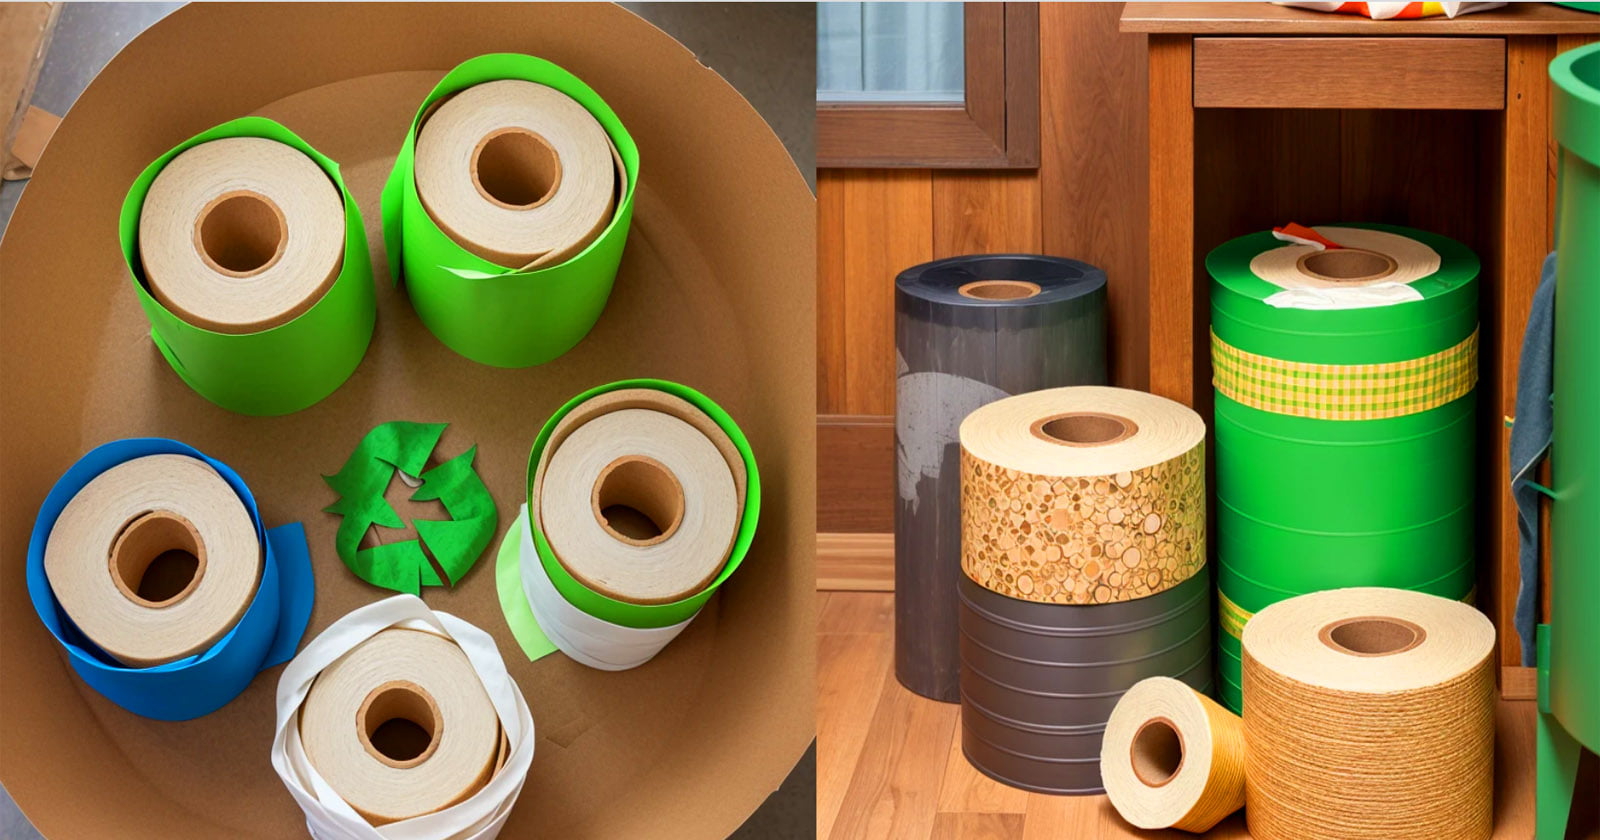 5 projetos lucrativos com rolos de papel higiênico que você pode começar hoje